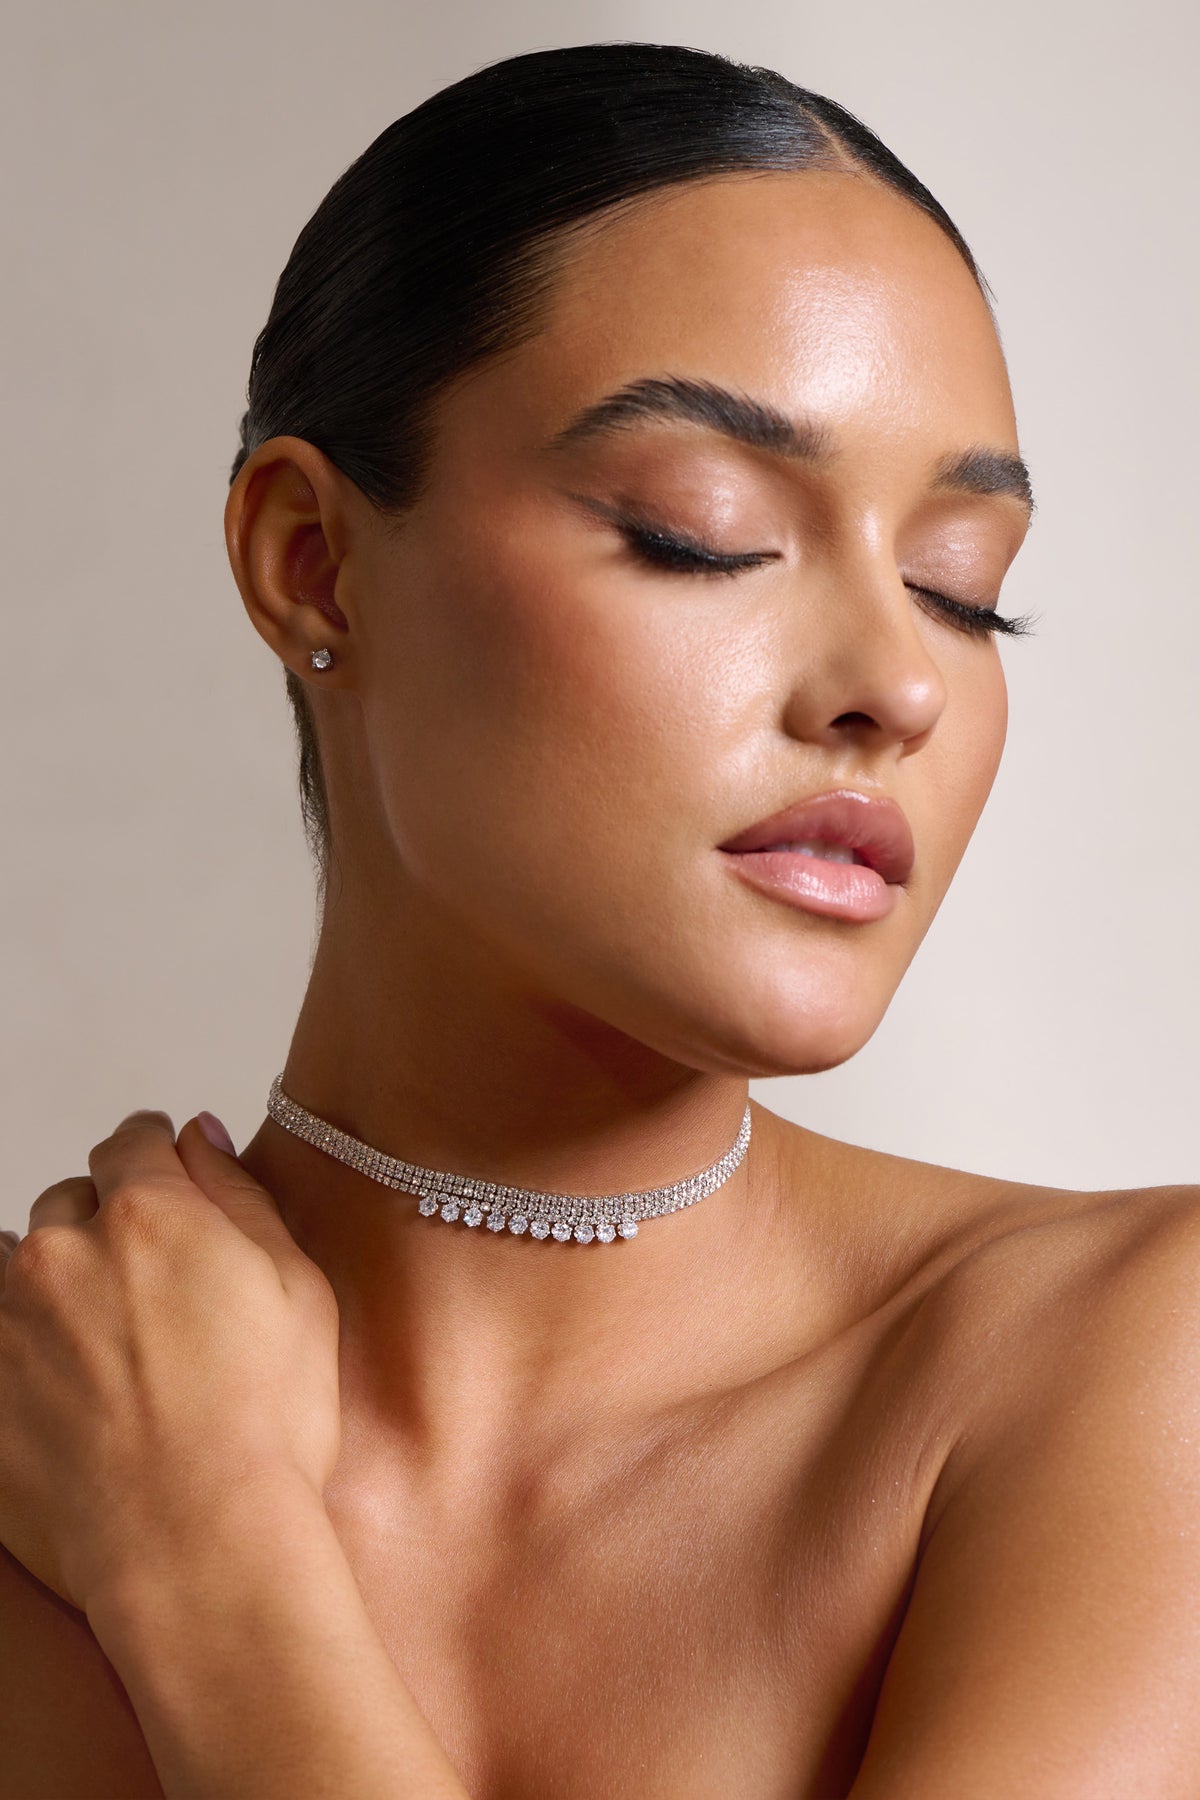 CRB7215900 - Diamants Légers necklace, SM - White gold, diamond - Cartier